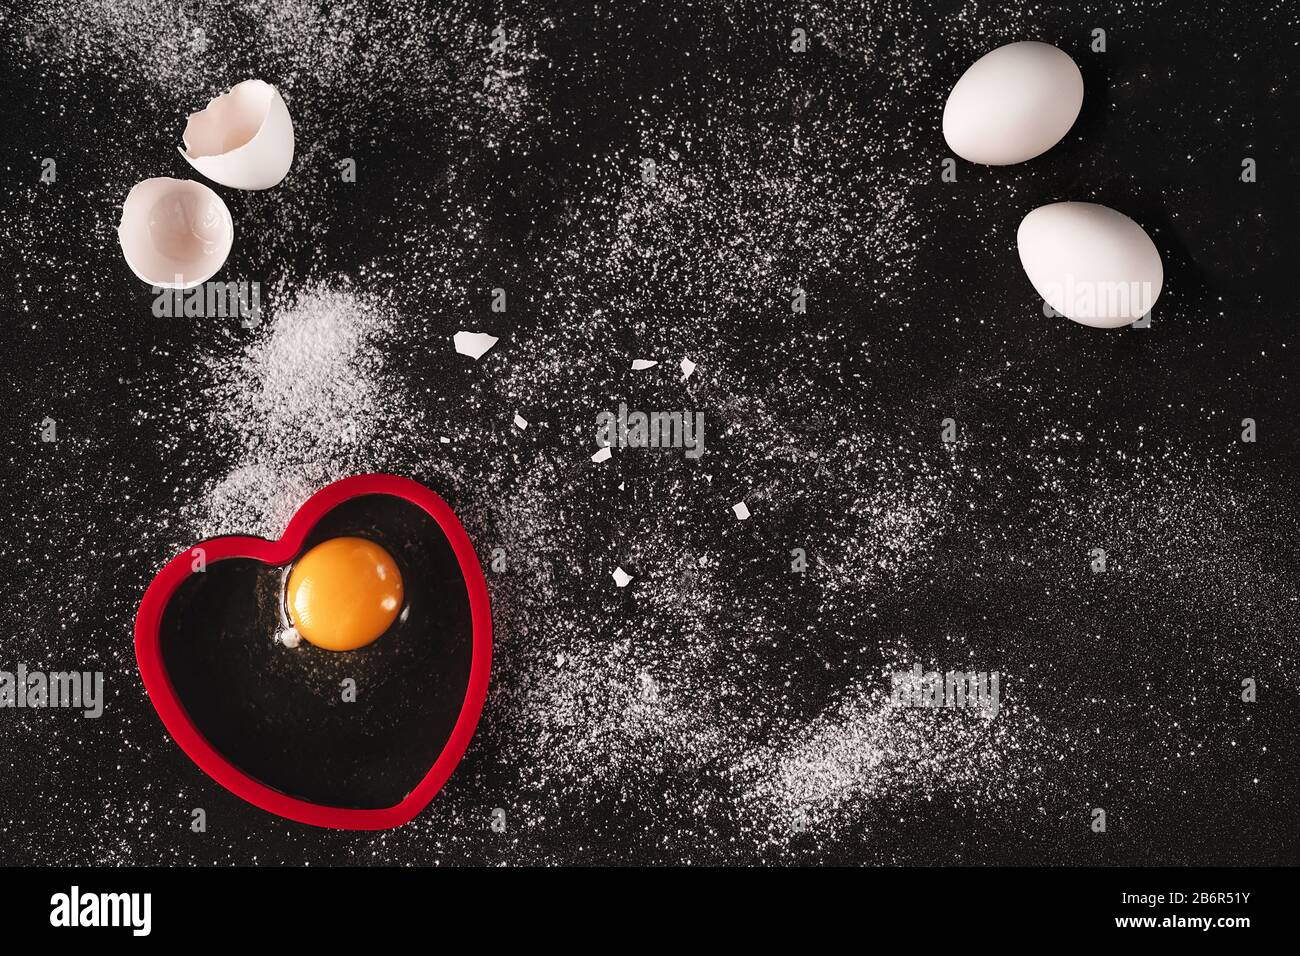 Immagine chiave bassa di un bianco crudo uova biologiche su sfondo nero cosparso di farina. Un uovo rotto aperto sulla forma rossa a forma di cuore di silicone. Cucina Foto Stock